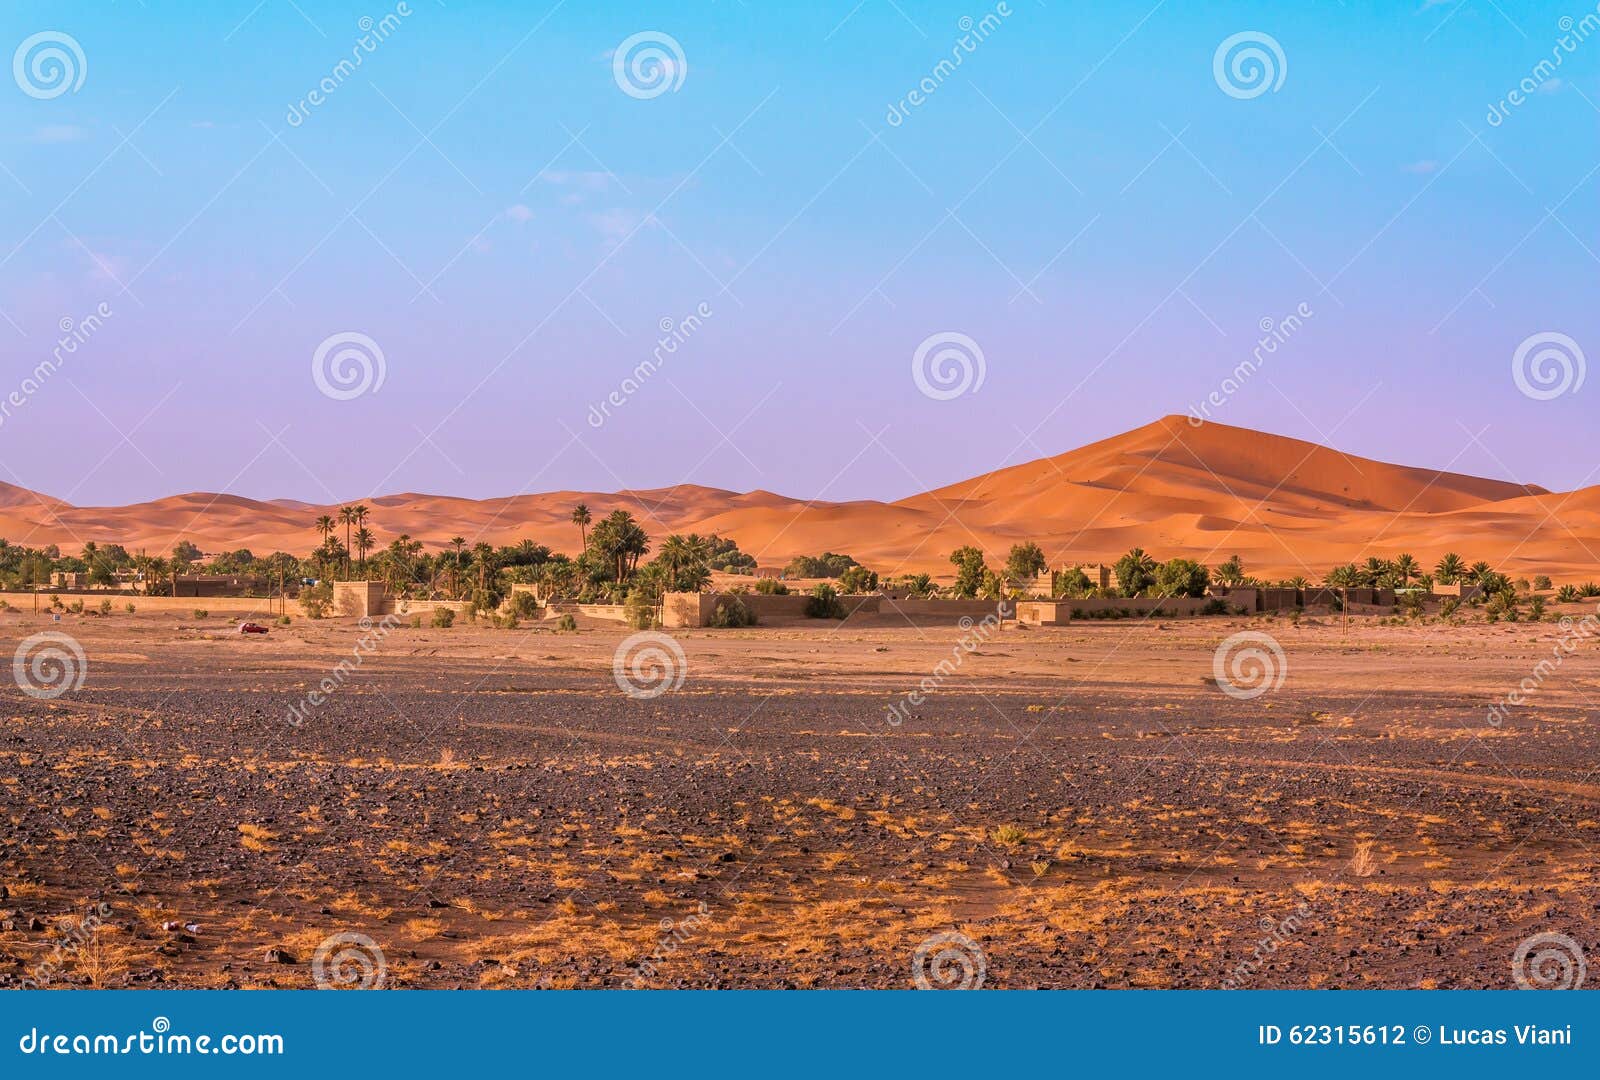 desert frontier